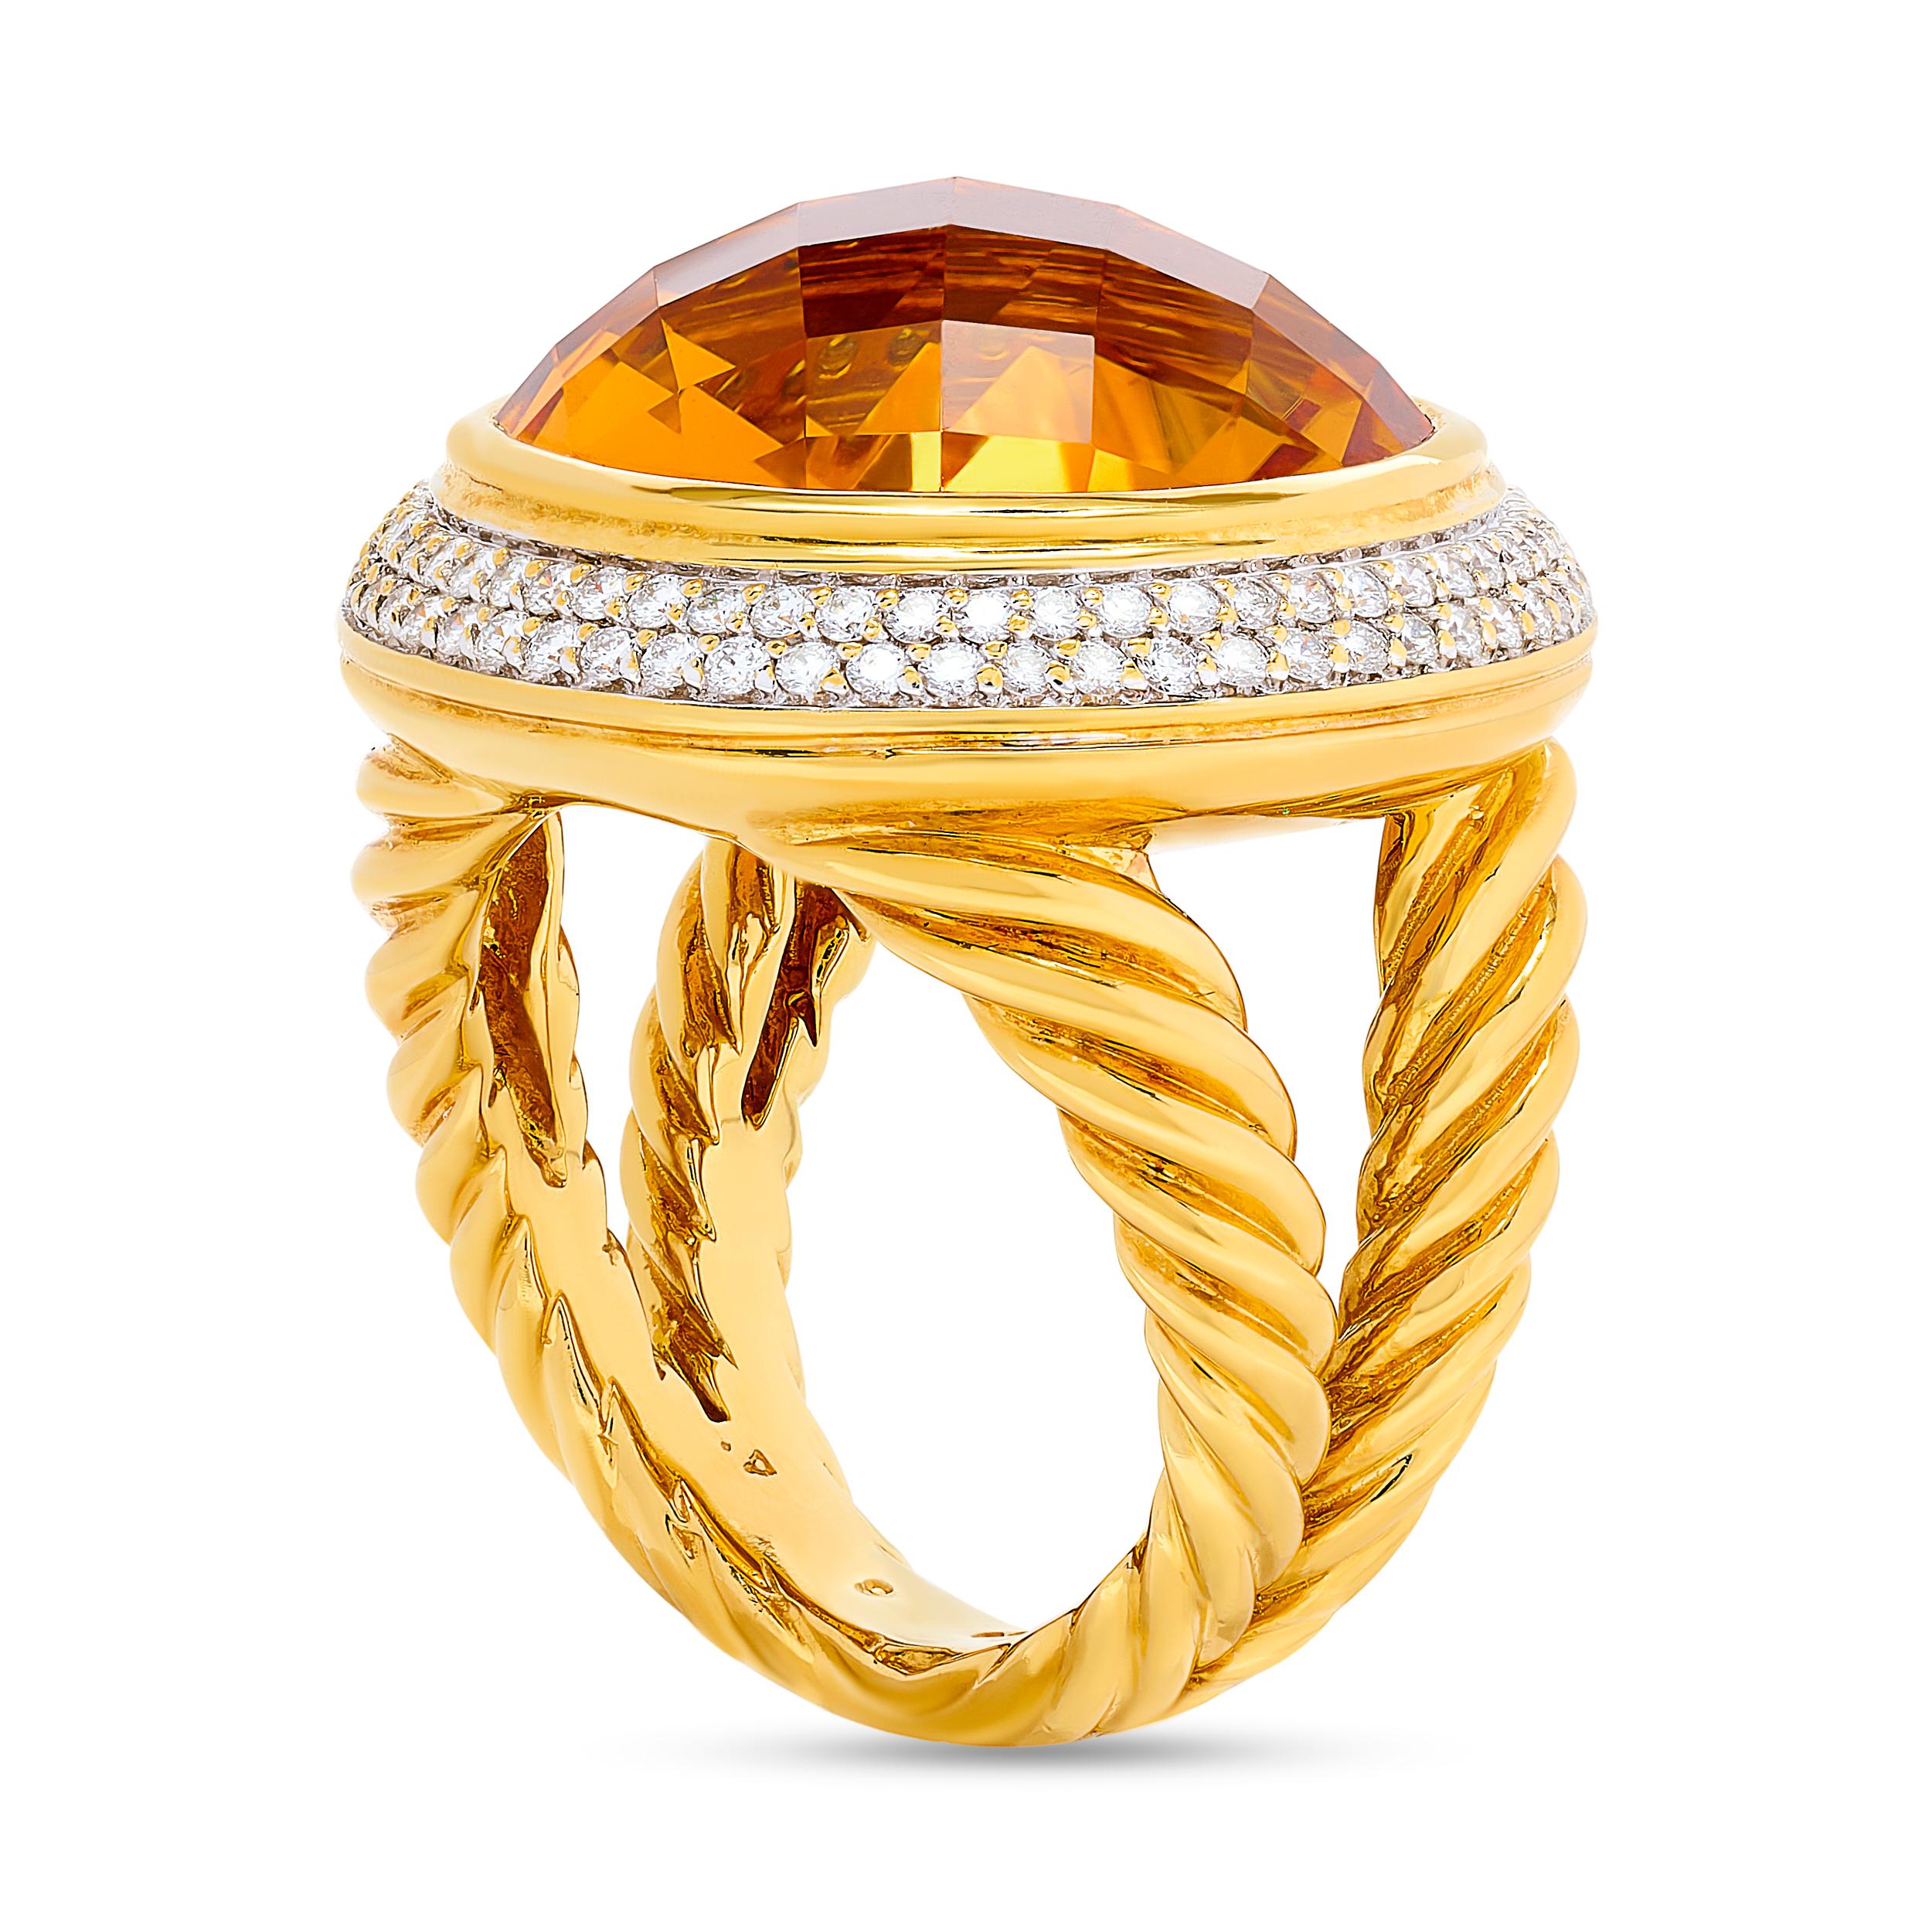 Der große David Yurman-Ring mit Citrin und Diamanten kombiniert auf elegante Weise das warme Leuchten des Citrin mit der Brillanz der Diamanten und schafft so ein atemberaubendes Schmuckstück.

Dieser Ring aus 18 Karat Gelbgold ist mit einem großen